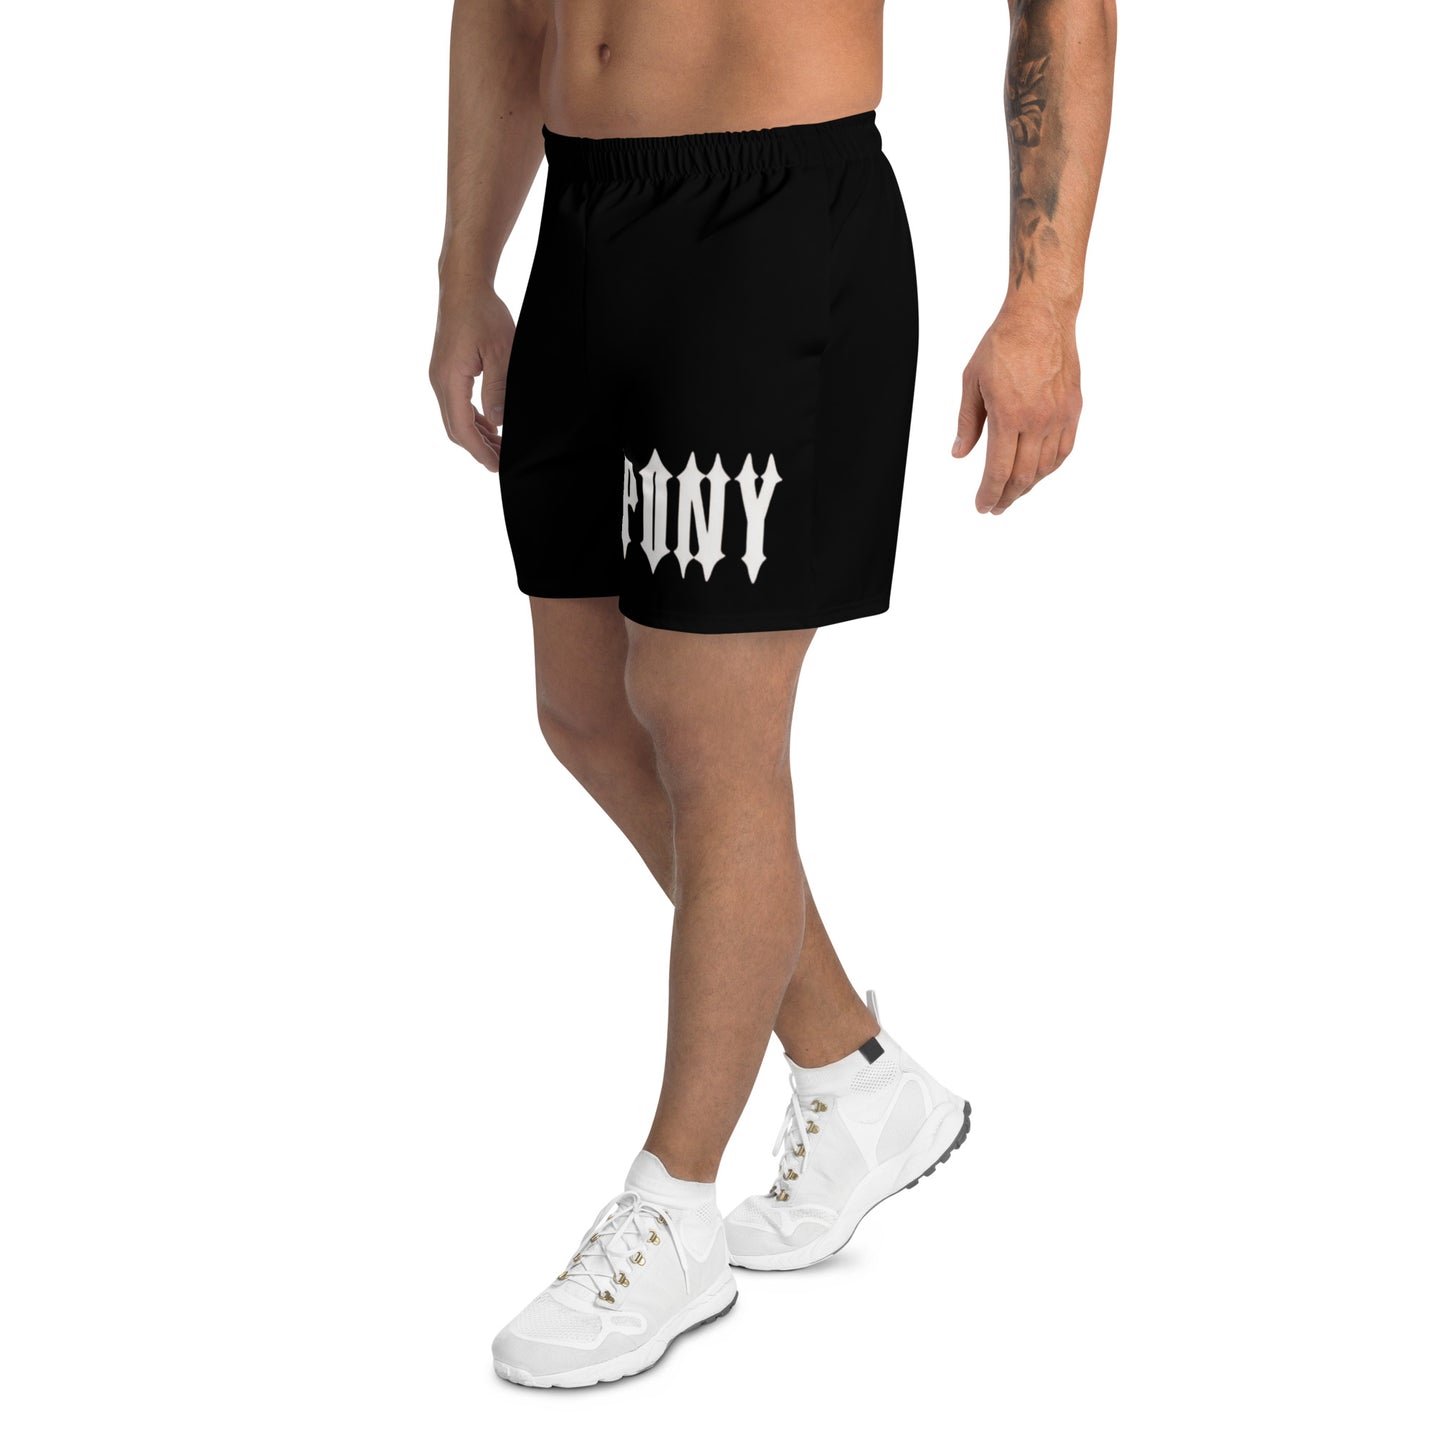 PoNY shorts